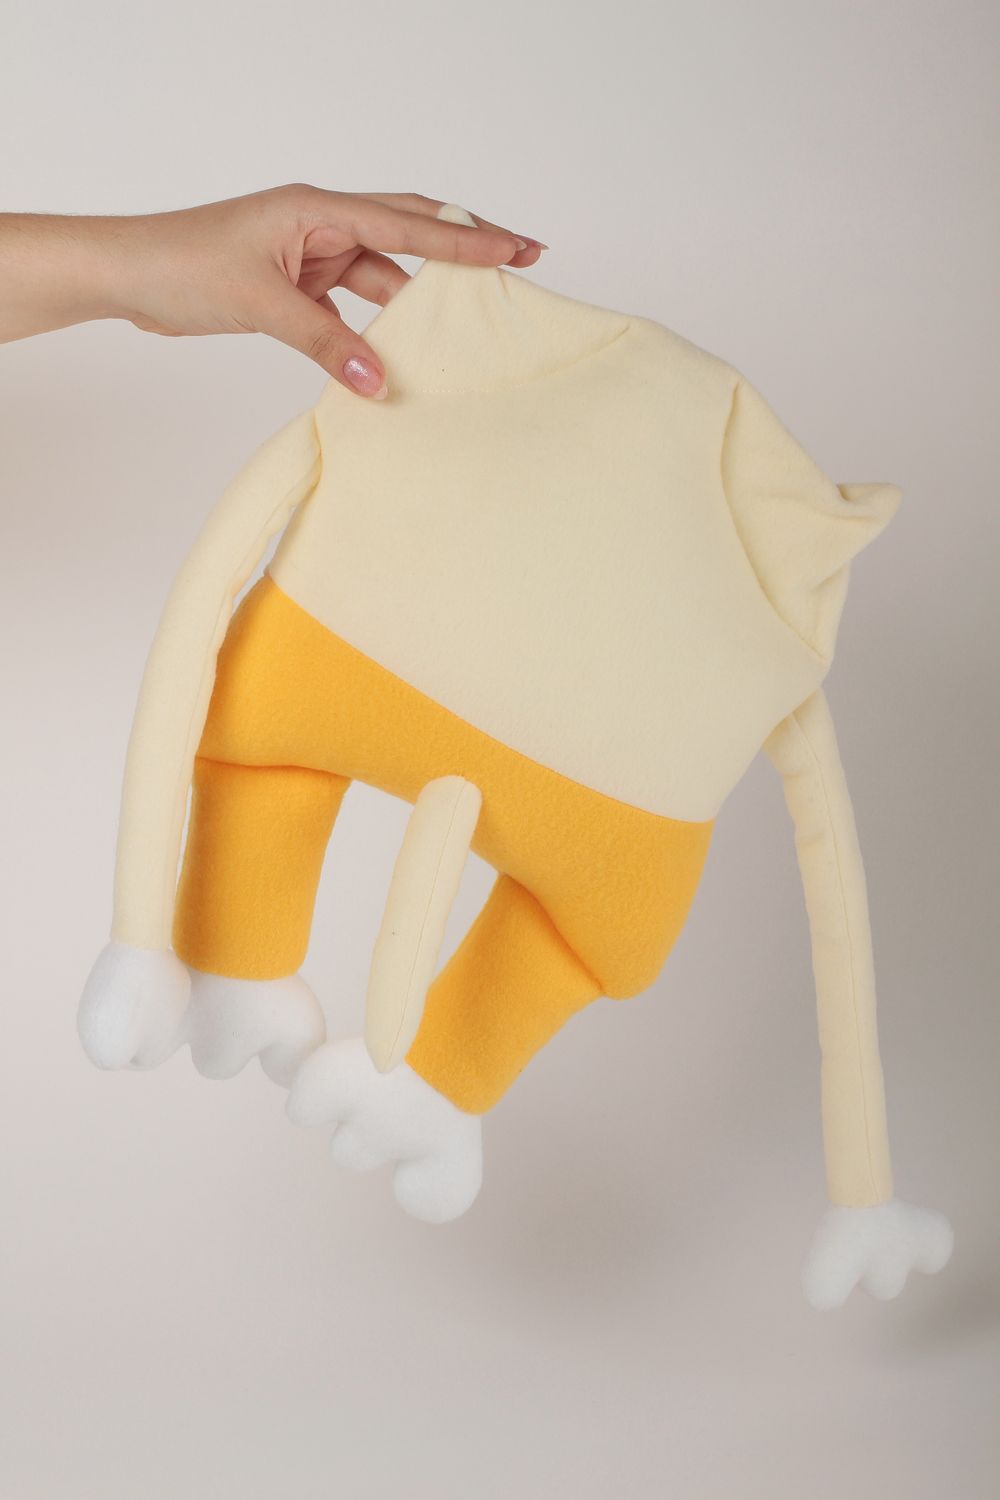 Peluche chat faite main Jouet pour enfant Idée Cadeau original en tissu polaire photo 3